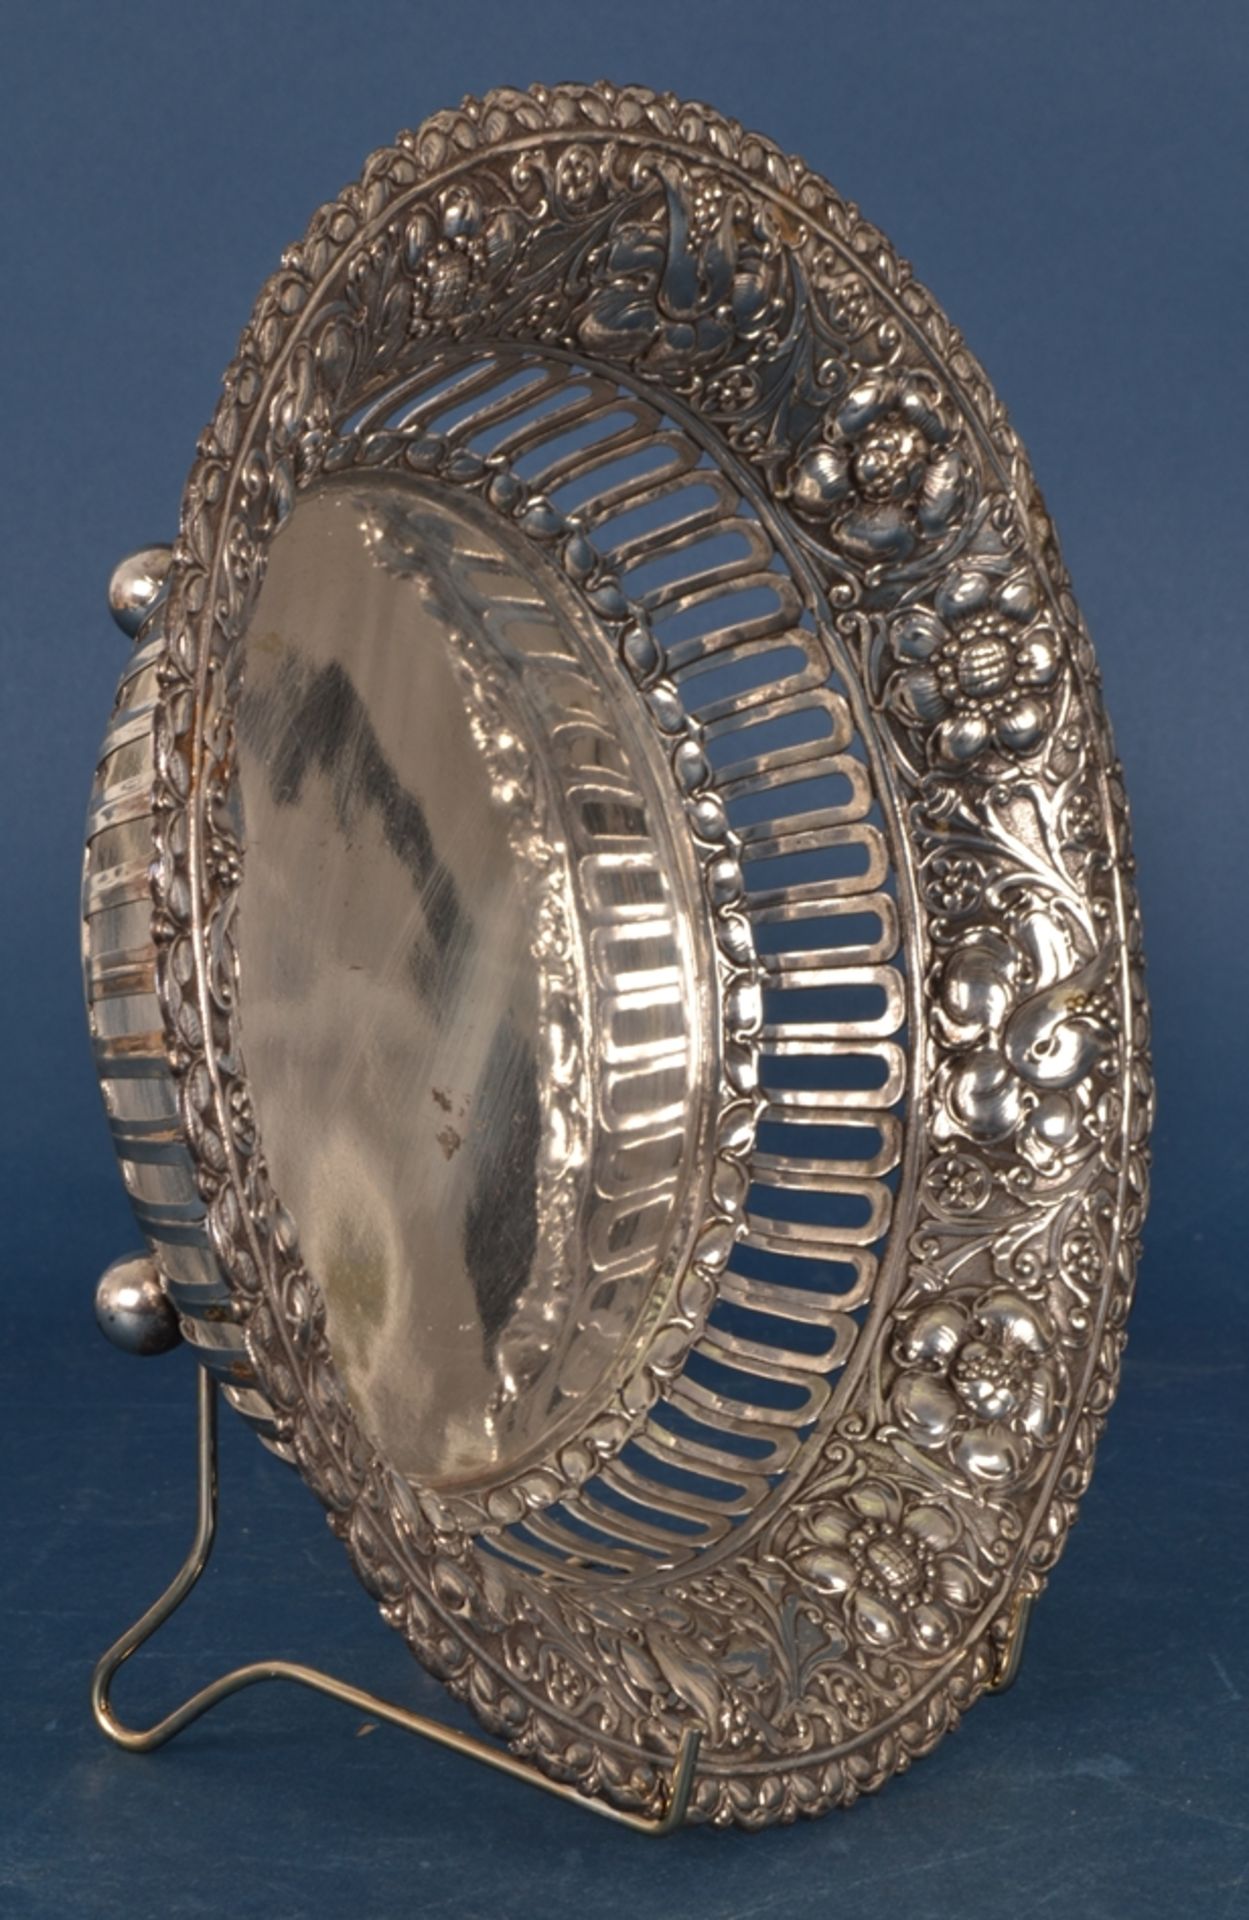 Runder Brotkorb / Früchtekorb, massives 800er Silber, deutsch. Höhe ca. 8 cm, Durchmesser ca. 28 cm, - Image 18 of 19